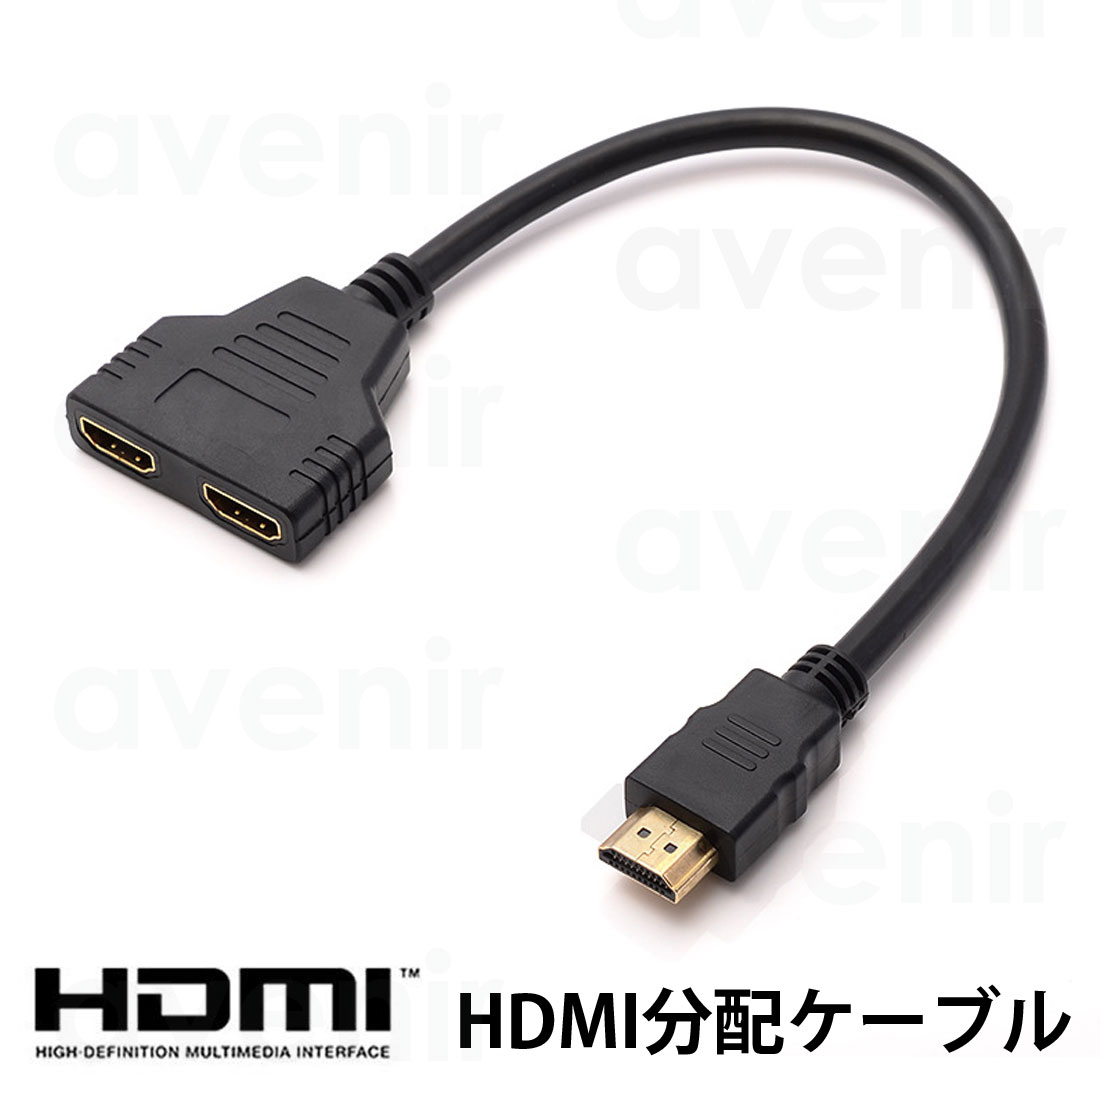 HDMI 分岐ケーブル HDMI分配器 分配ケーブル 長さ30cm 1080p フルHD対応 HDMIスプリッター 2入力1出力 2つポート同時使用不可 GAC-05